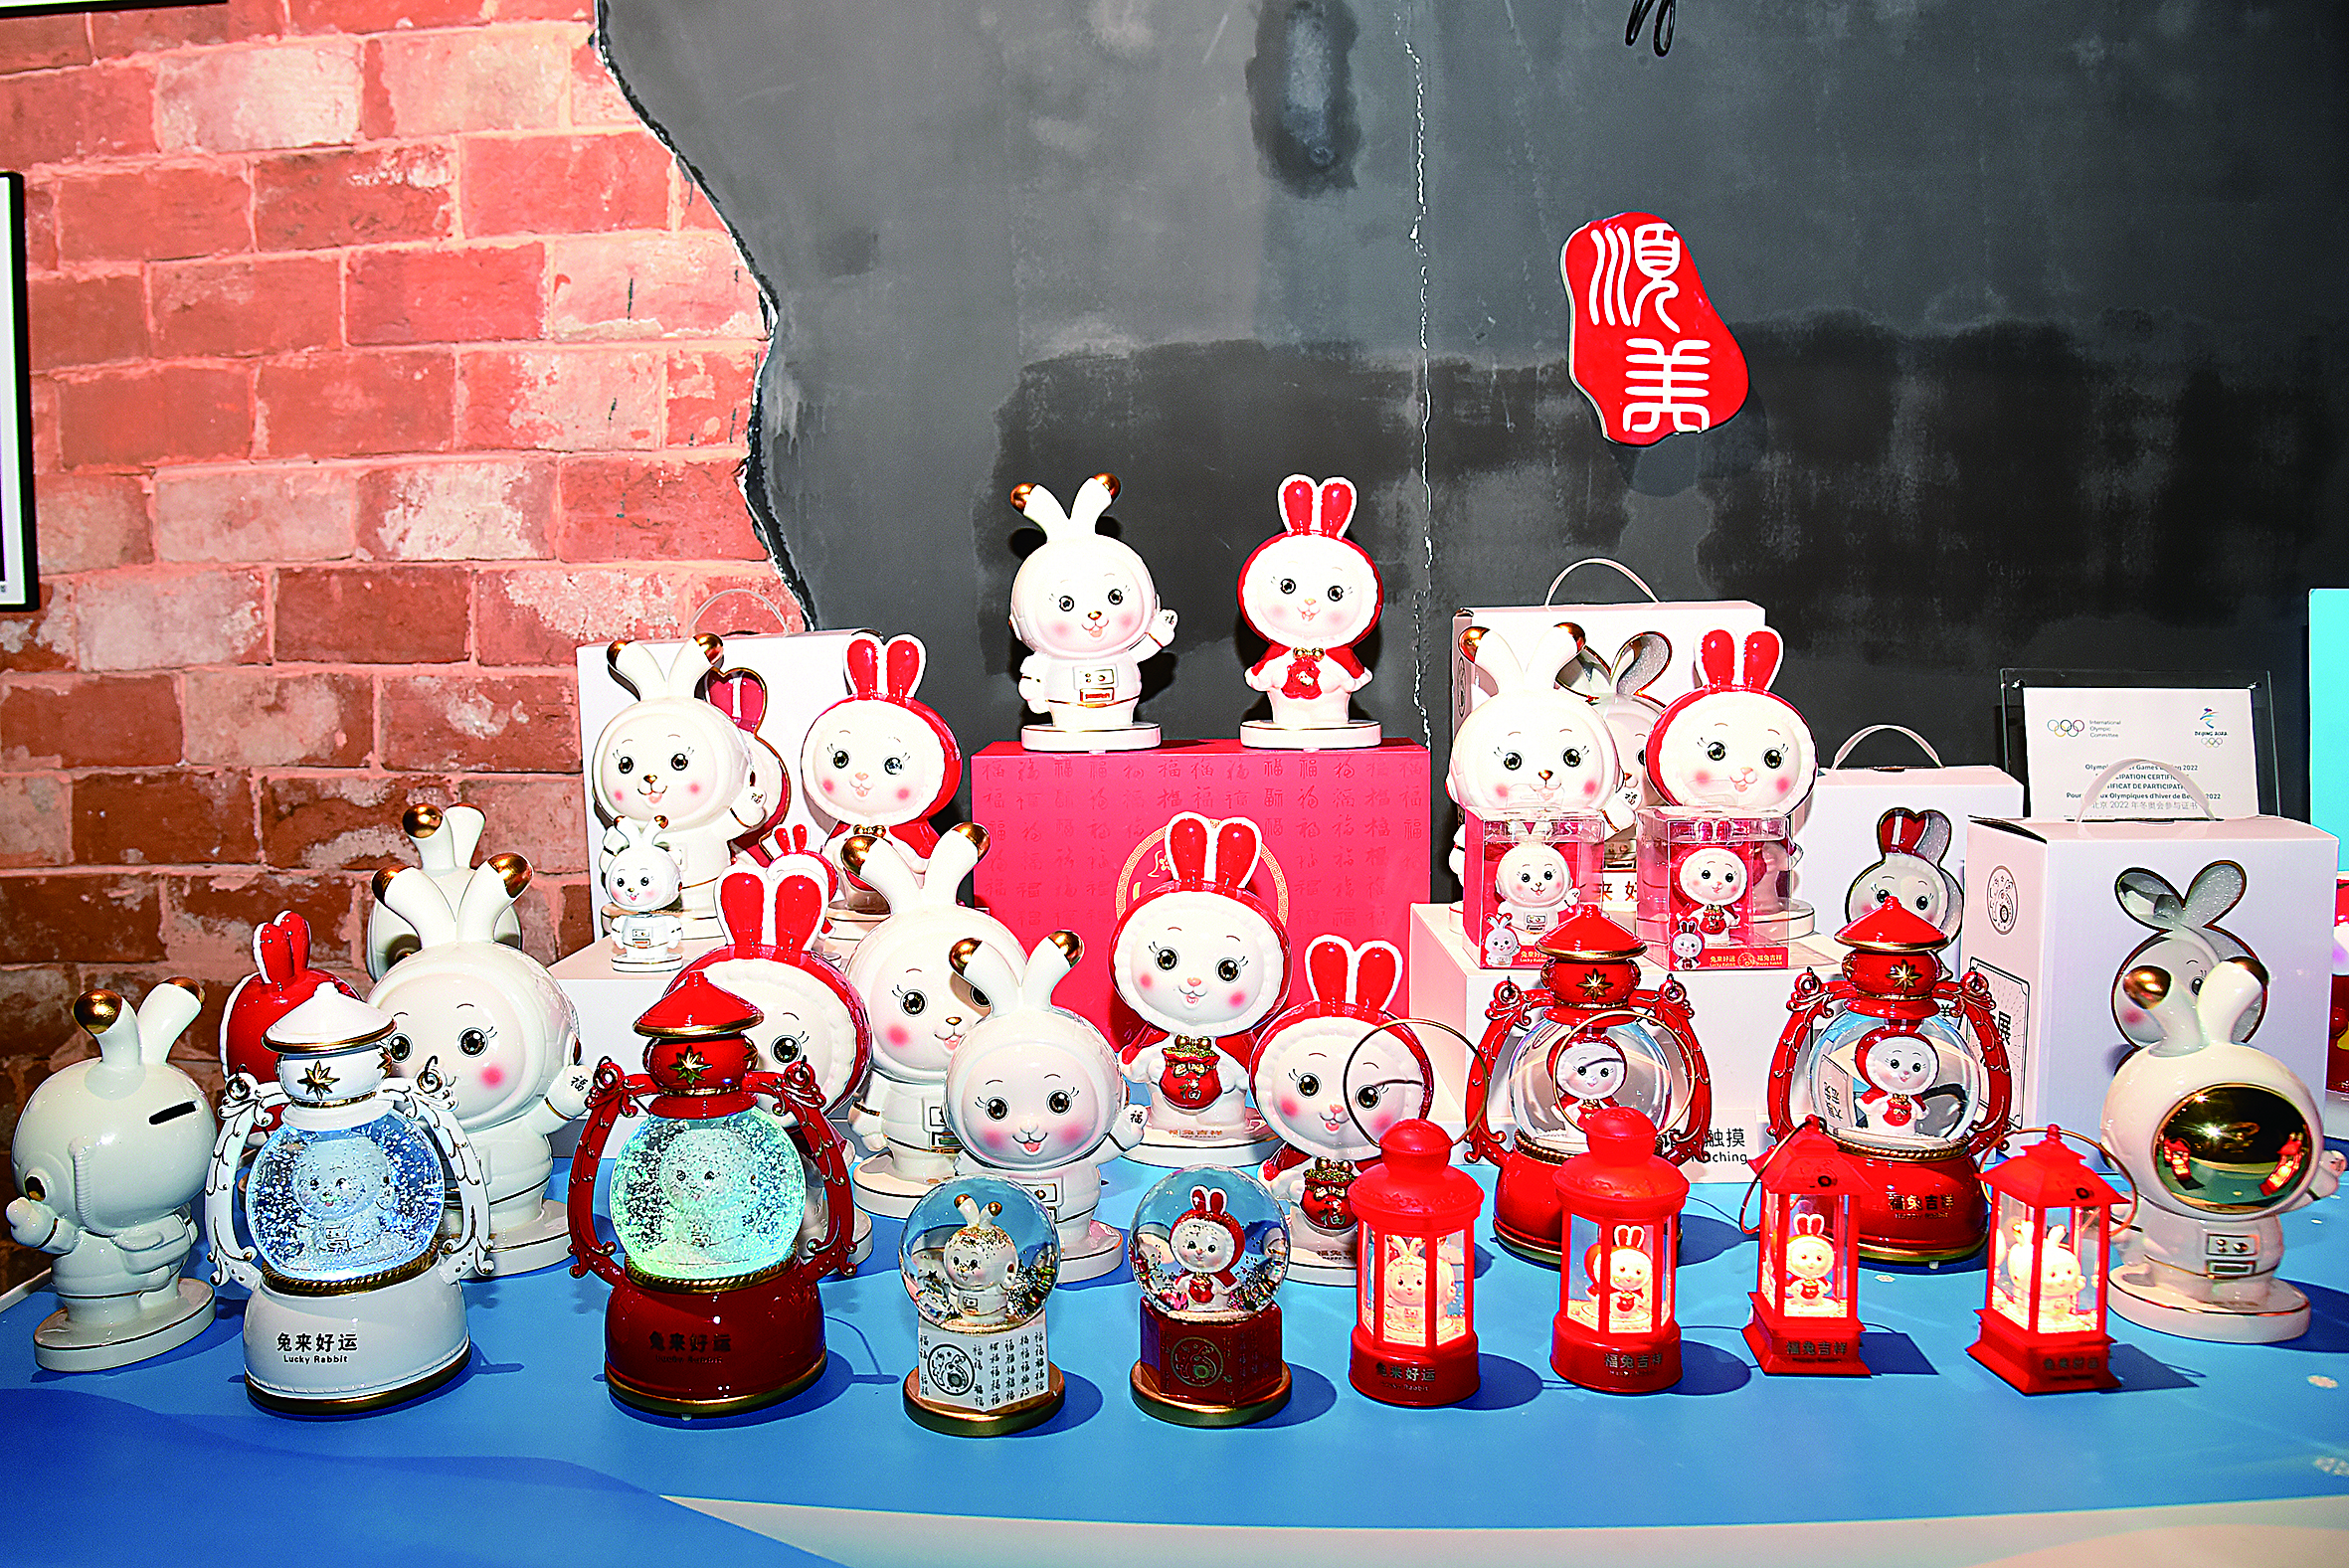 我县陶瓷产业发展质量不断提高，图为顺美陶瓷生产的兔年生肖瓷.JPG